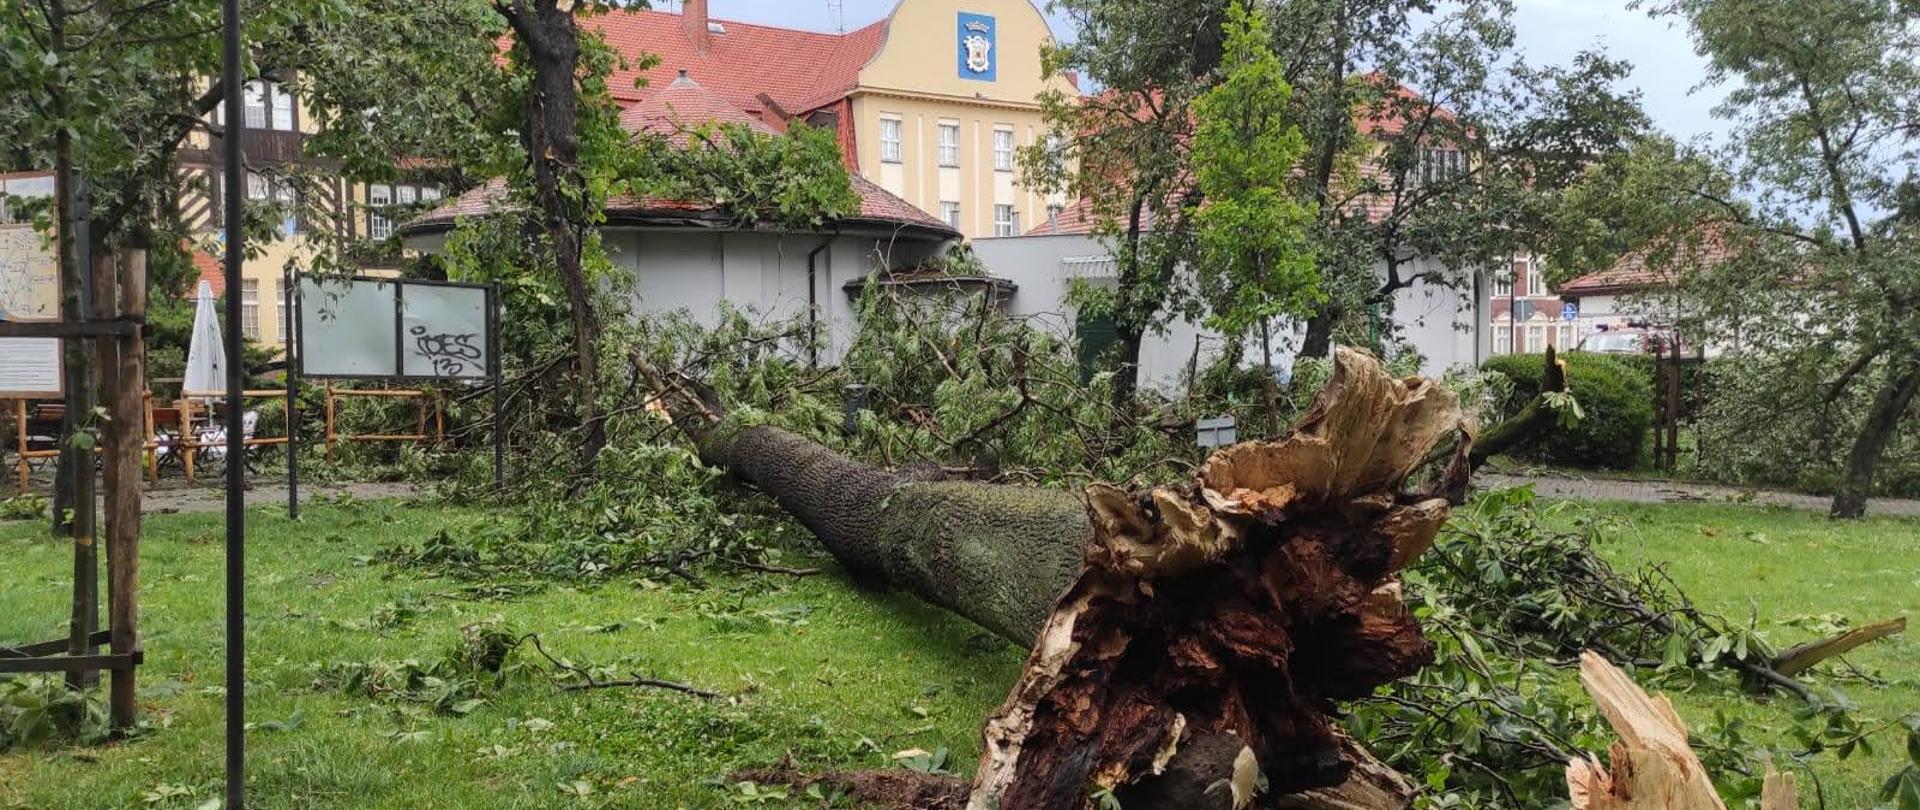 Na zdjęciu znajduje się powalone drzewo, przy lokalu gastronomicznym przy ul. Dworcowej 1 w Chełmnie